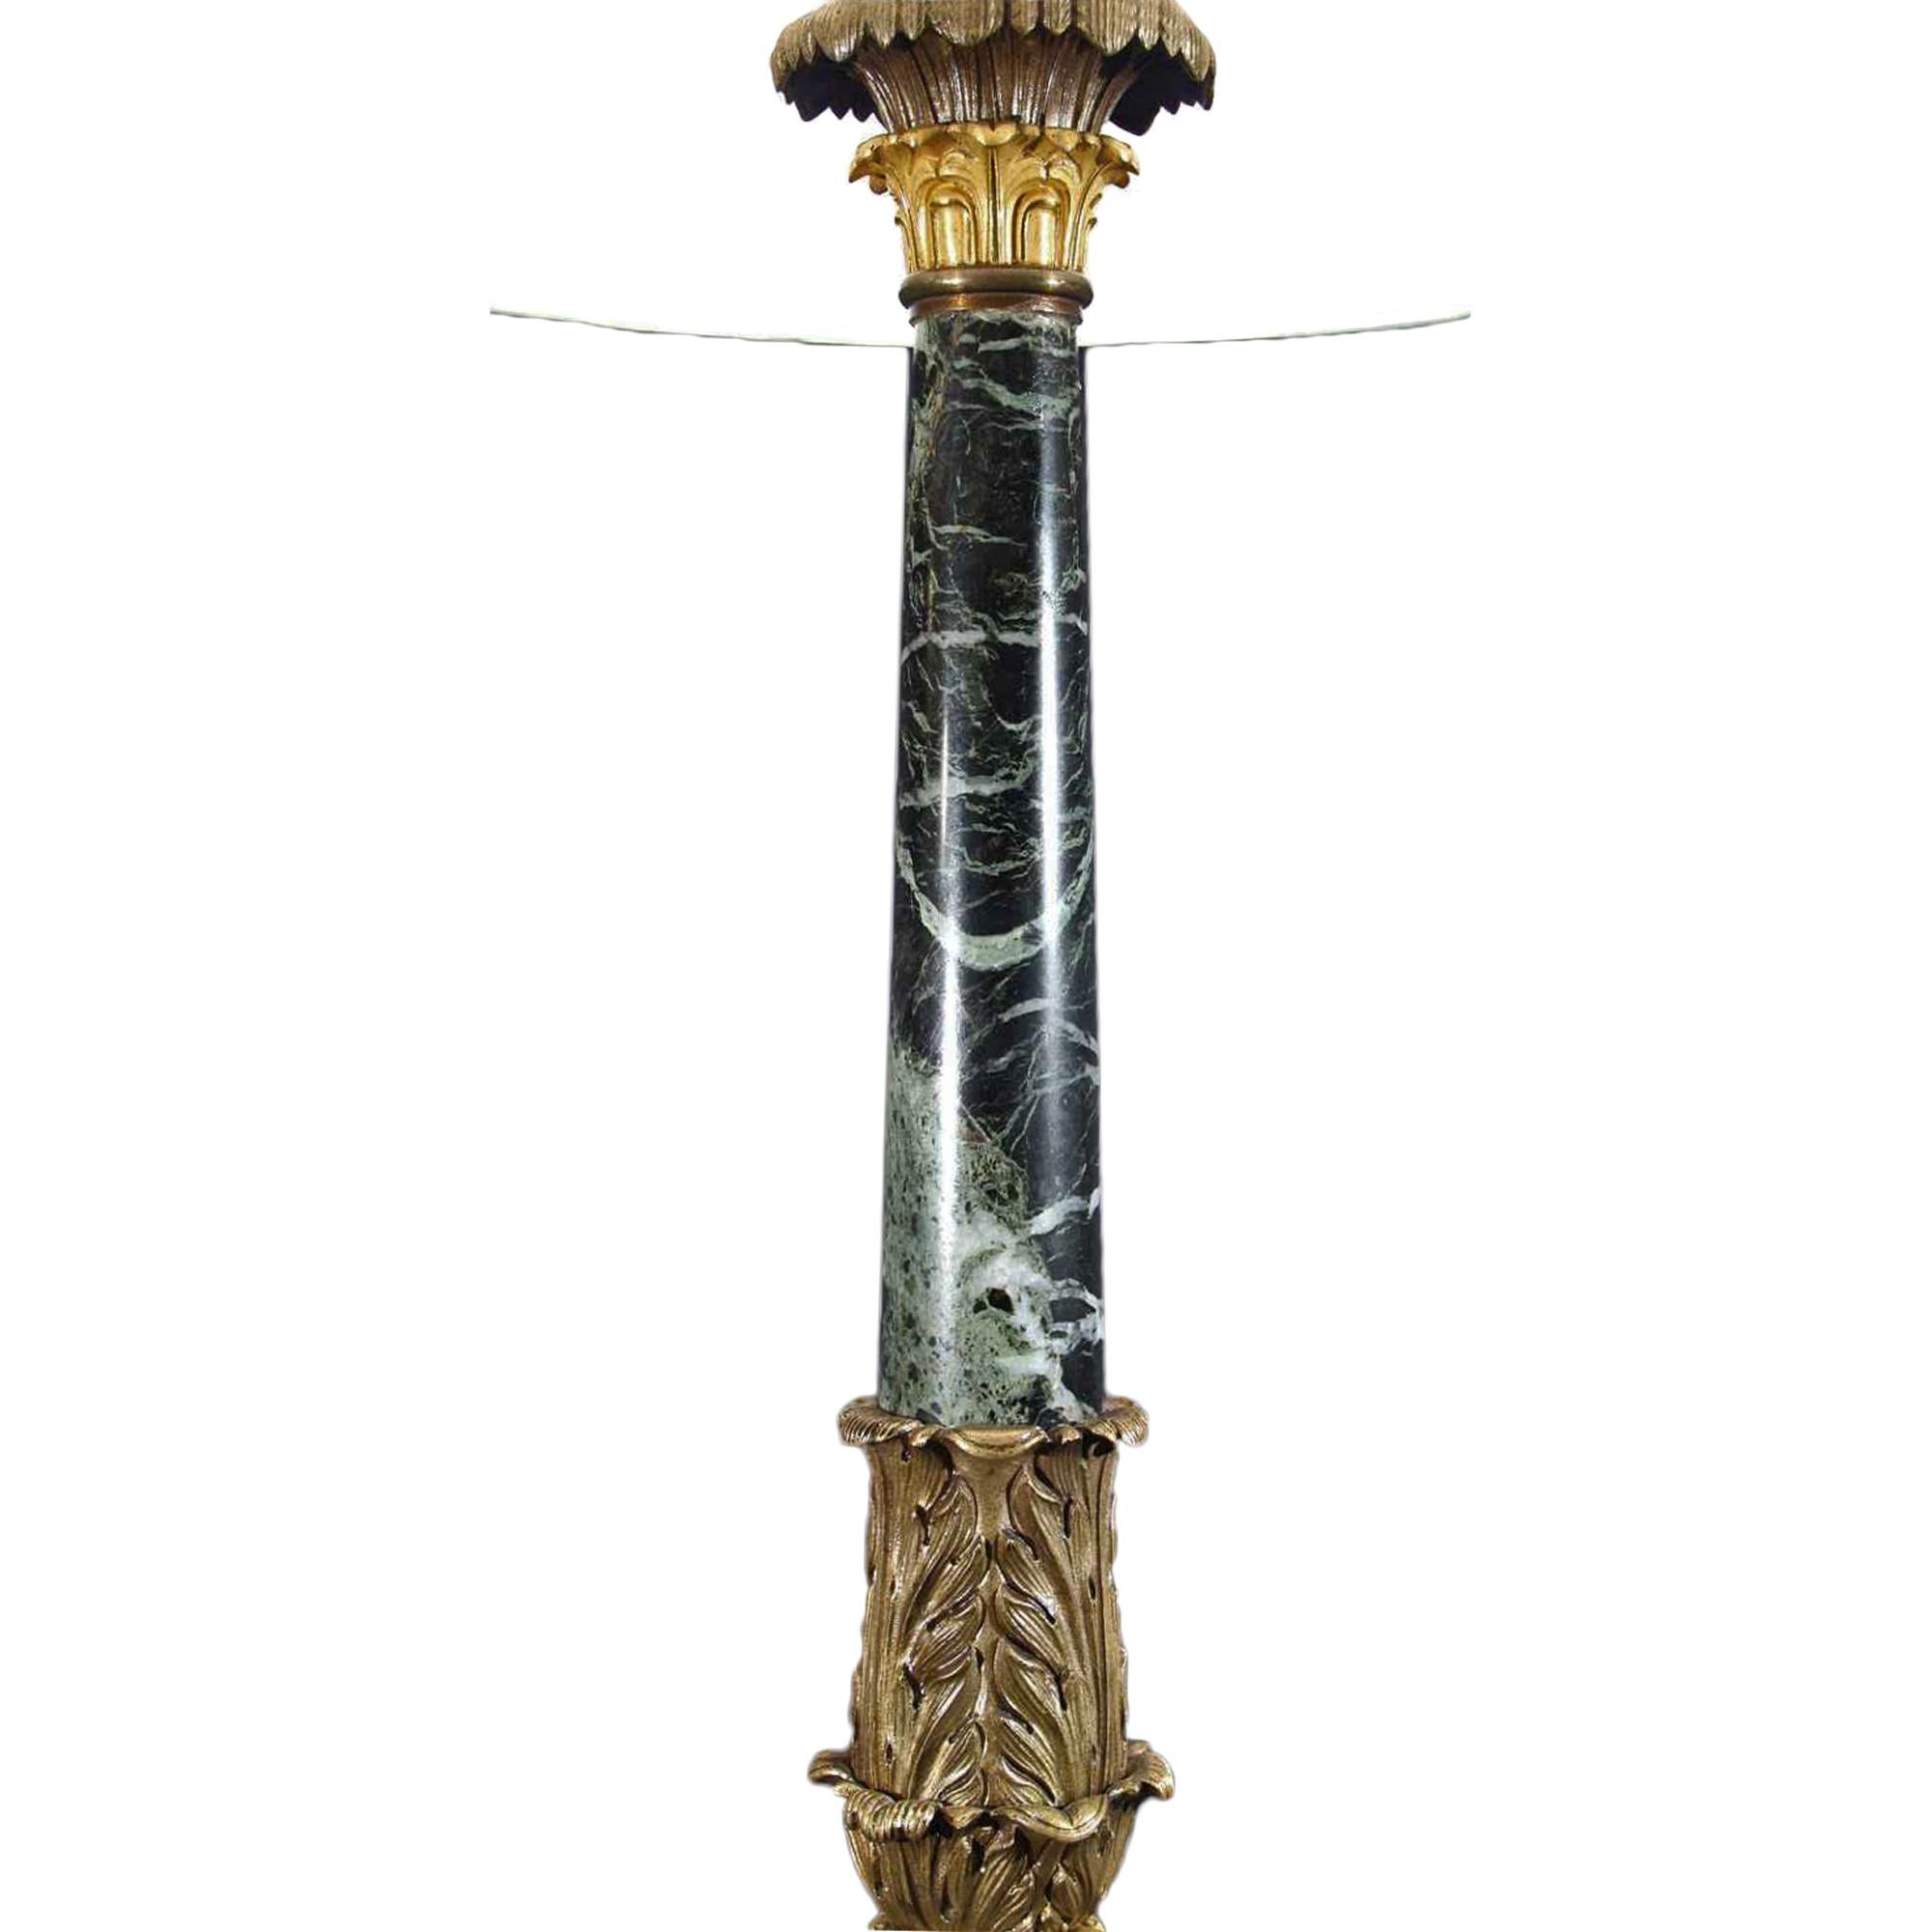 Eine attraktive und ungewöhnliche französische Neo-Klassik-Lampe des 19. Jahrhunderts aus Verde-Antico-Marmor, patinierter Bronze und Ormolu mit originaler Vergoldung und Patina. Die Lampe hat einen dreieckigen Marmorsockel mit abgeschrägten Seiten,